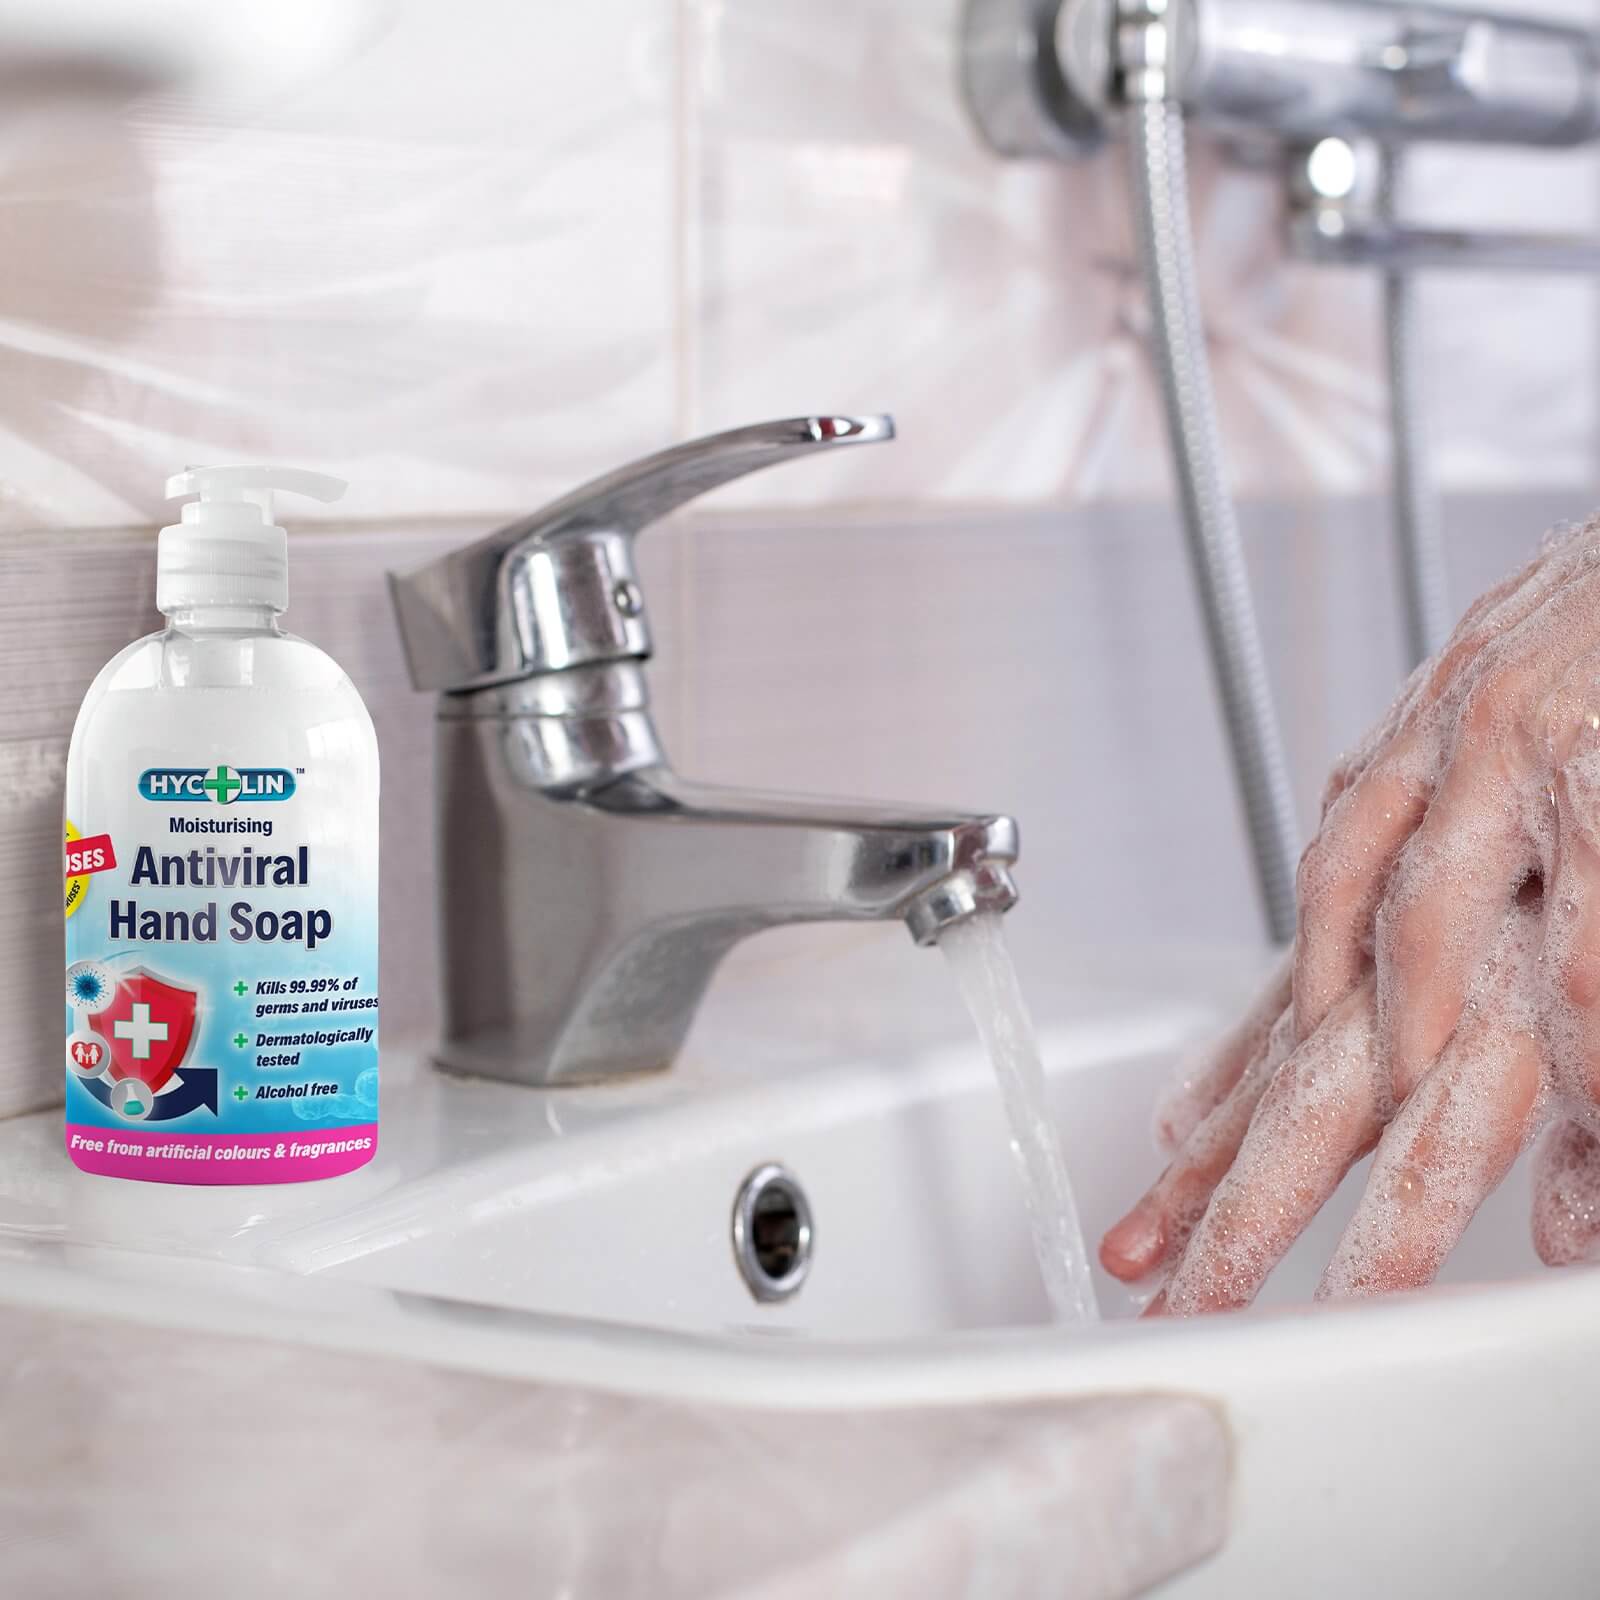 Hycolin Antiviral Hand Soap